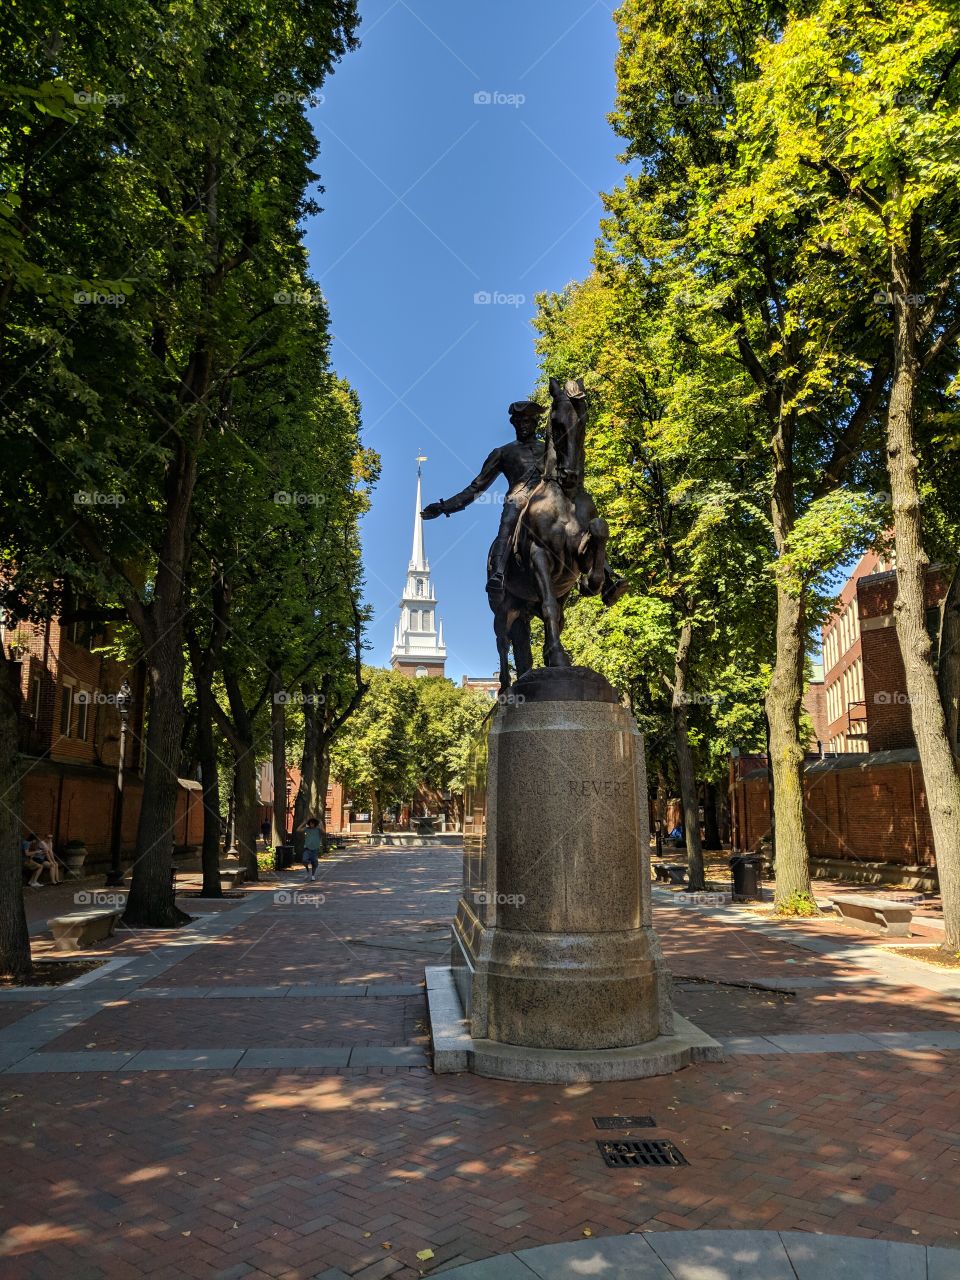 Statue of Paul Revere.